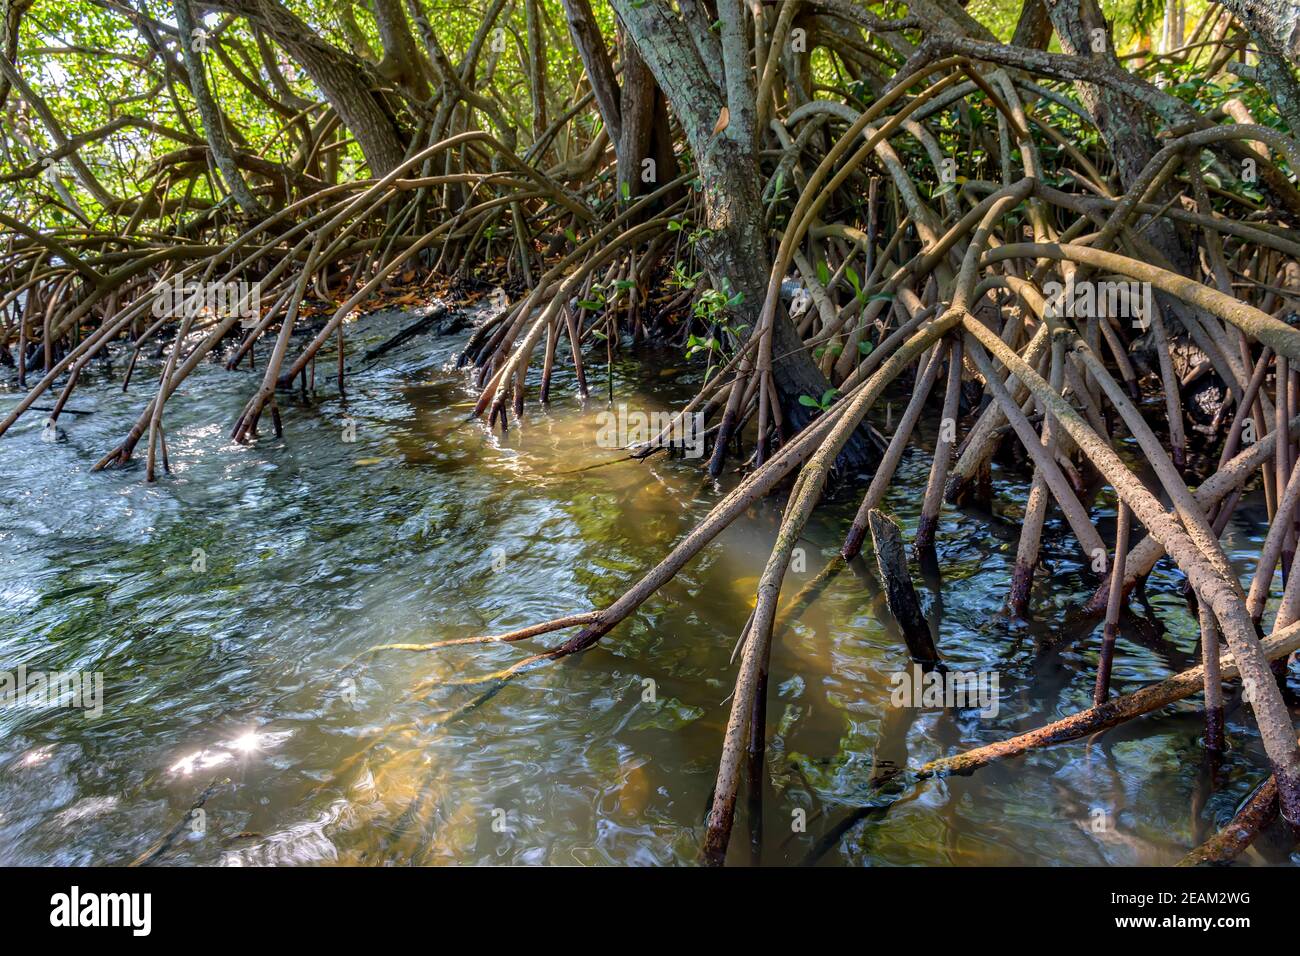 Raíces y vegetación acuática típica de los manglares comunes de Brasil ecosistema tropical Foto de stock